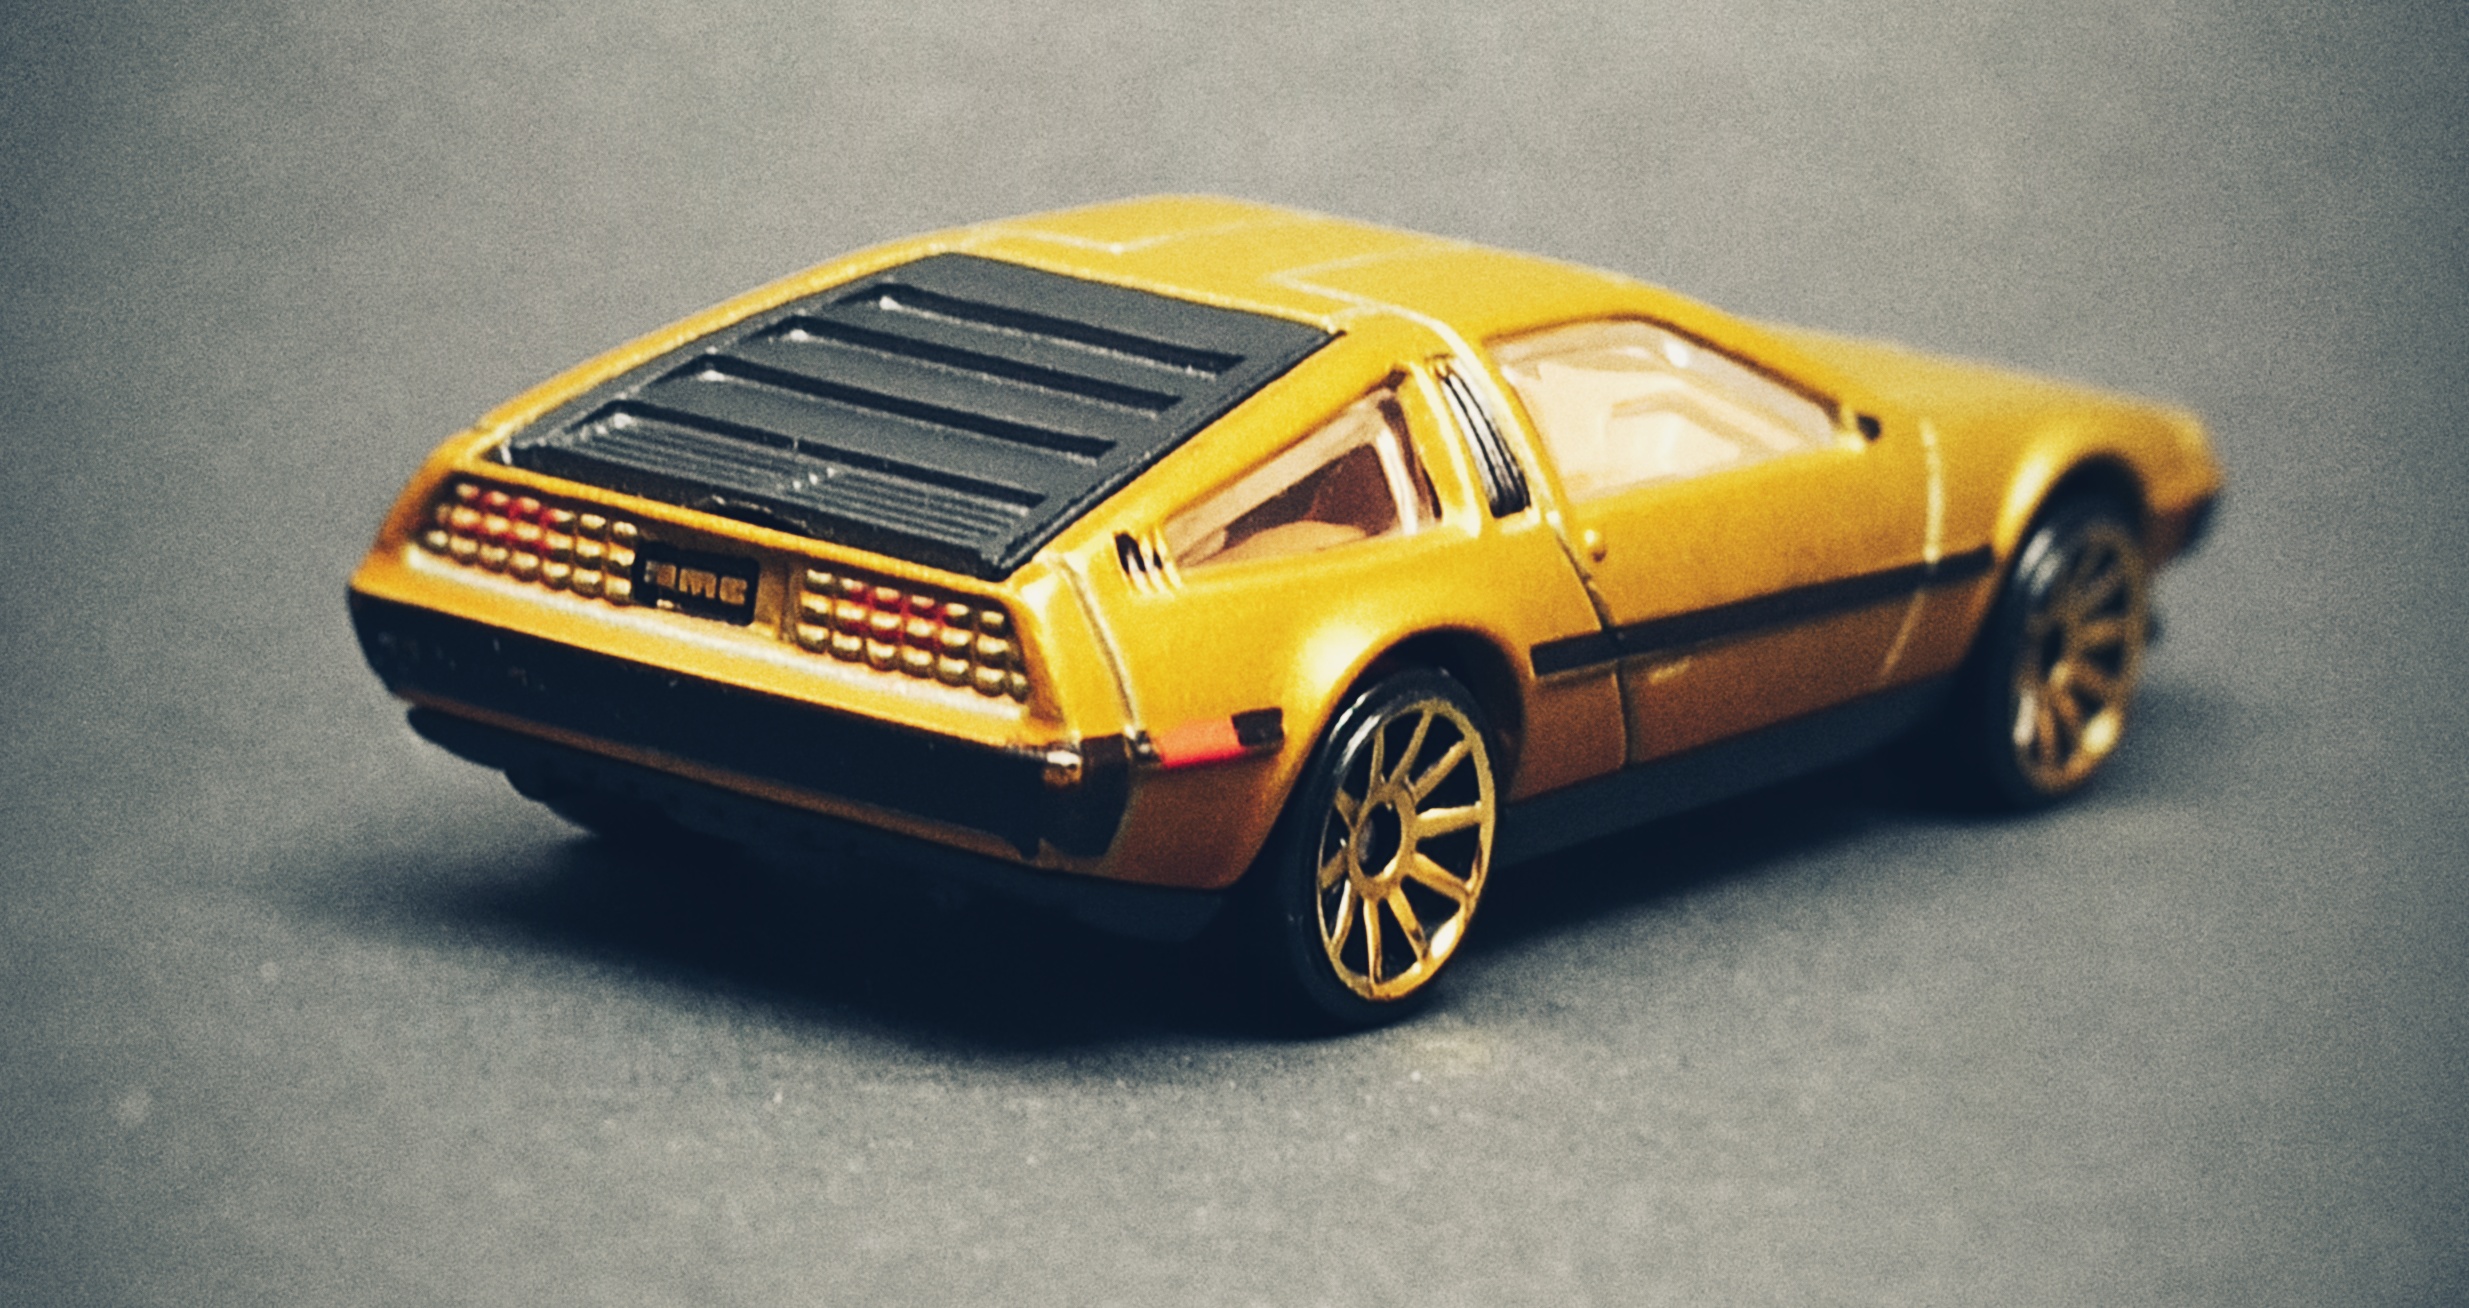 Hot Wheels '81 DeLorean DMC-12 (R0931) 2010 (15/240) New Models (15/44 satin gold